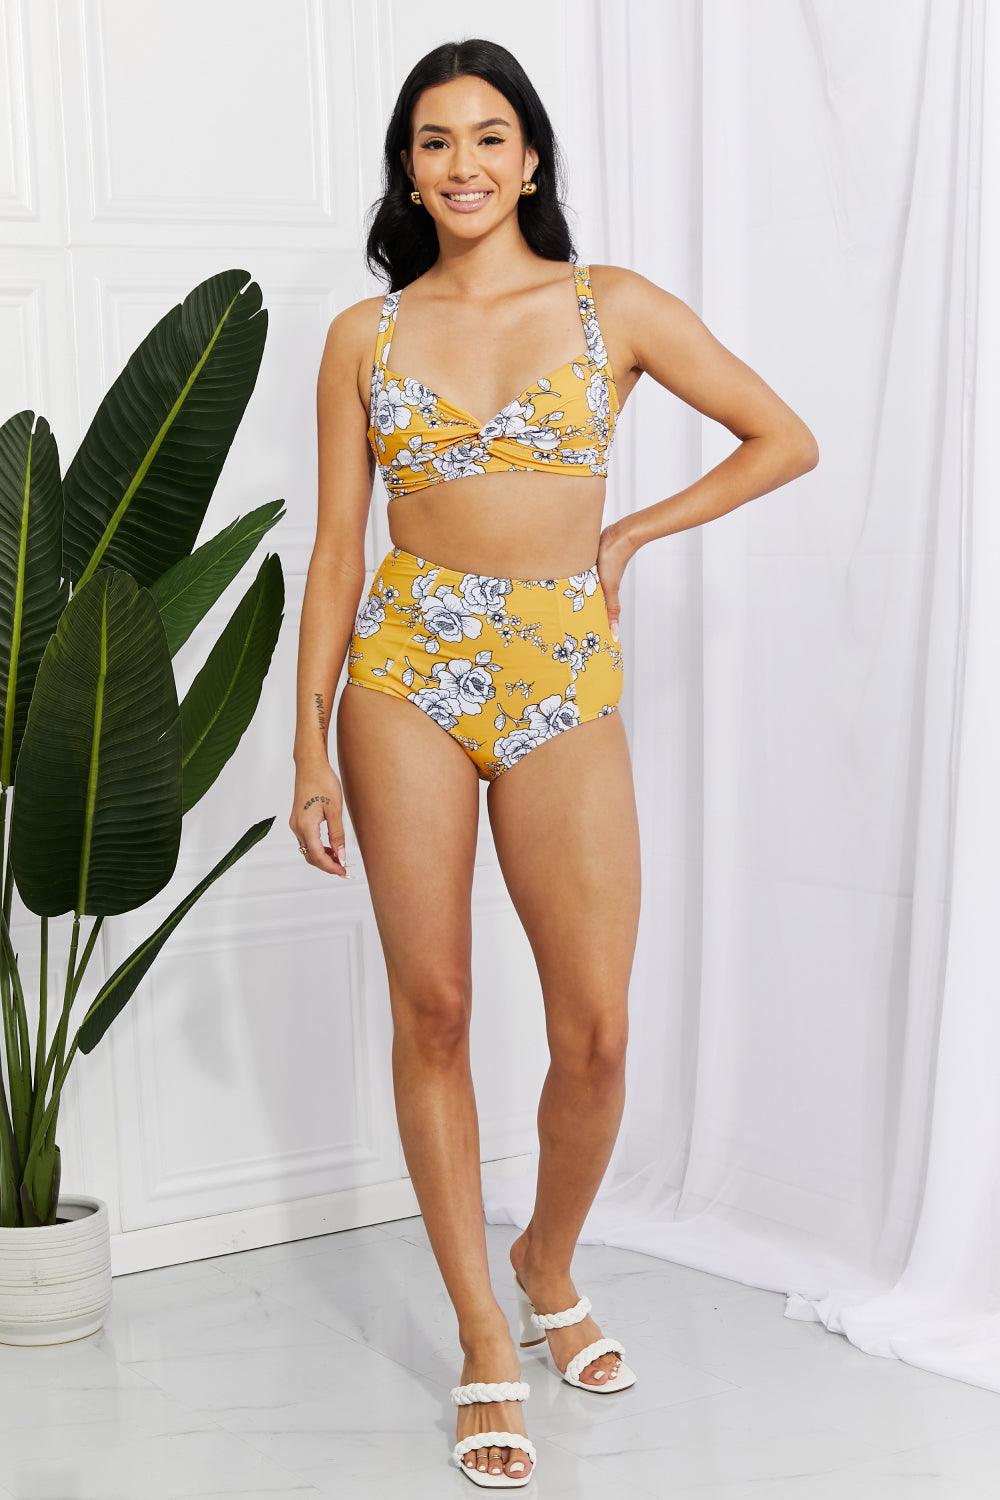 Marina West Swim Take A Dip Twist High-Rise Bikini in Mustard - Glamorous Boutique USA L.L.C.